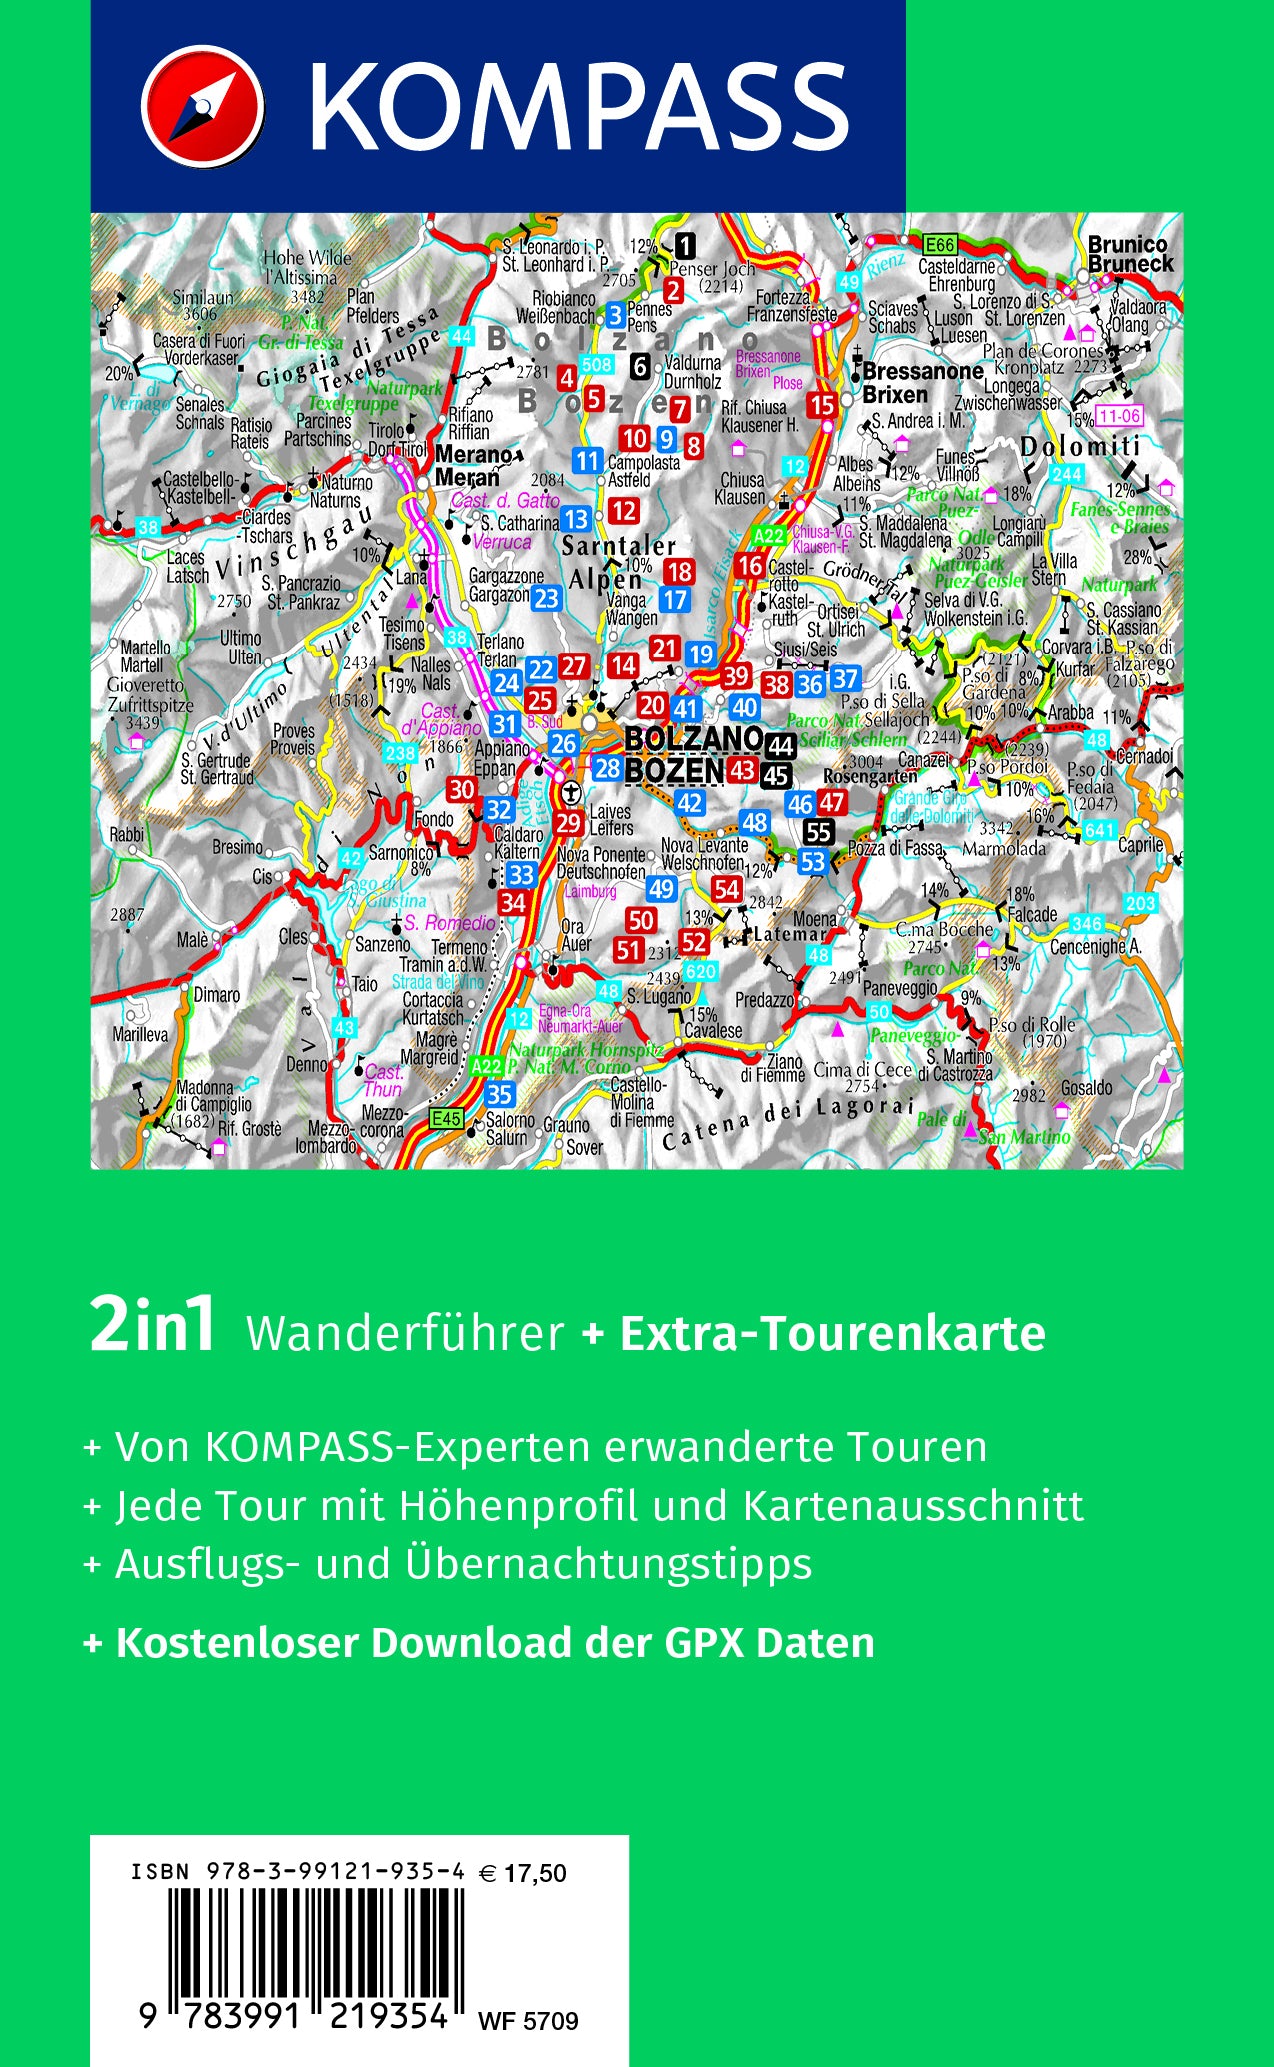 Bozen, Sarntal, Ritten, Eppan, Kalterer See, Seiser Alm - KOMPASS Wanderführer